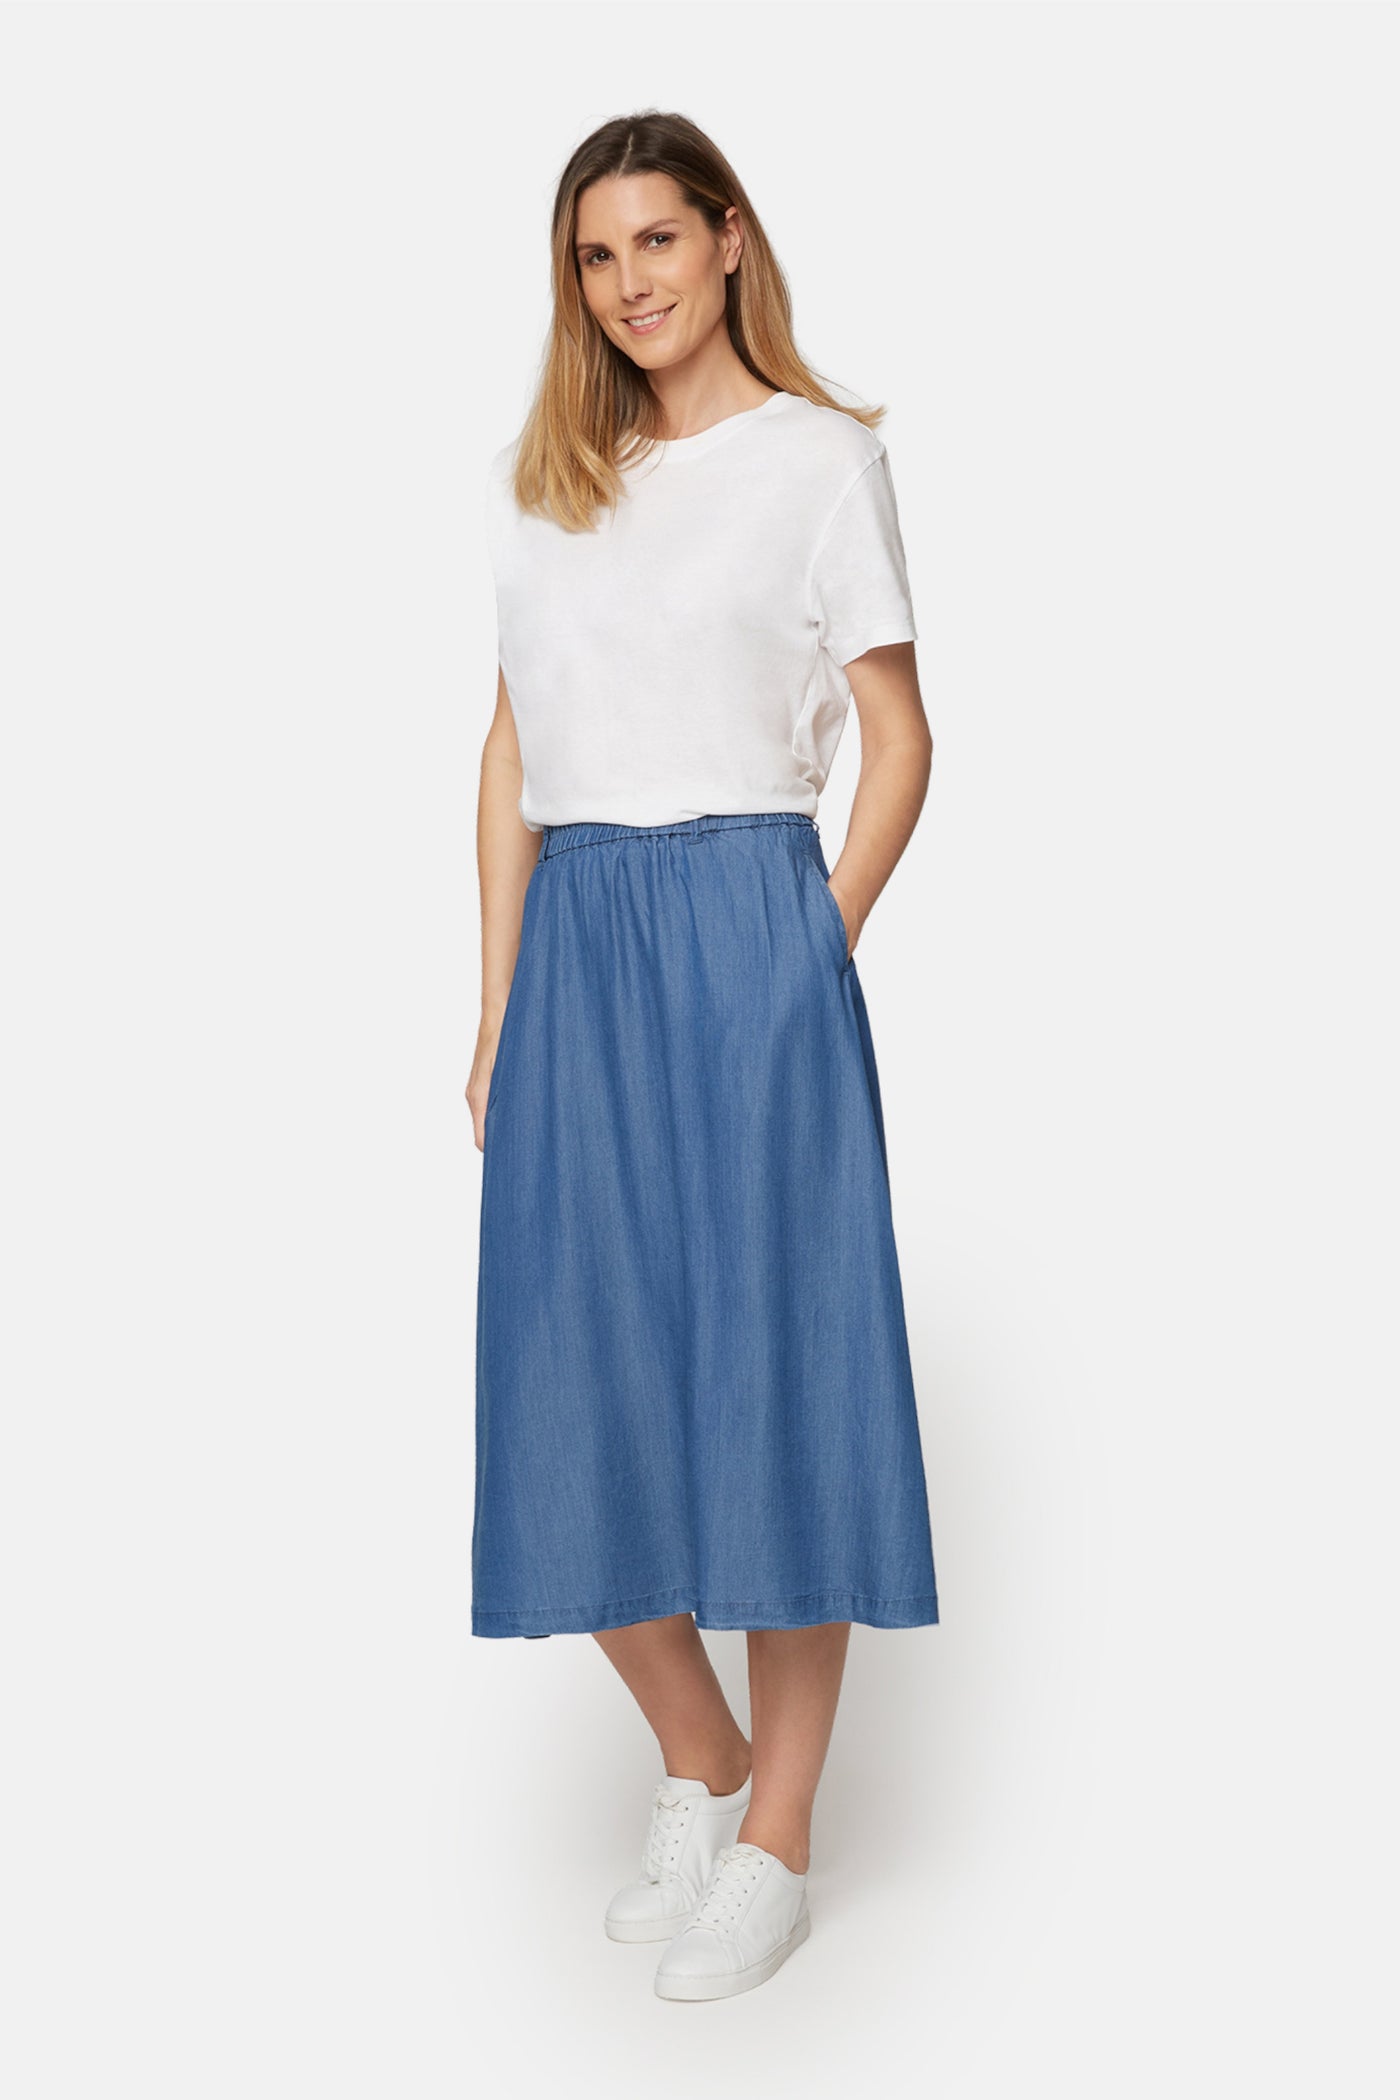 Tencell Blue Skirt